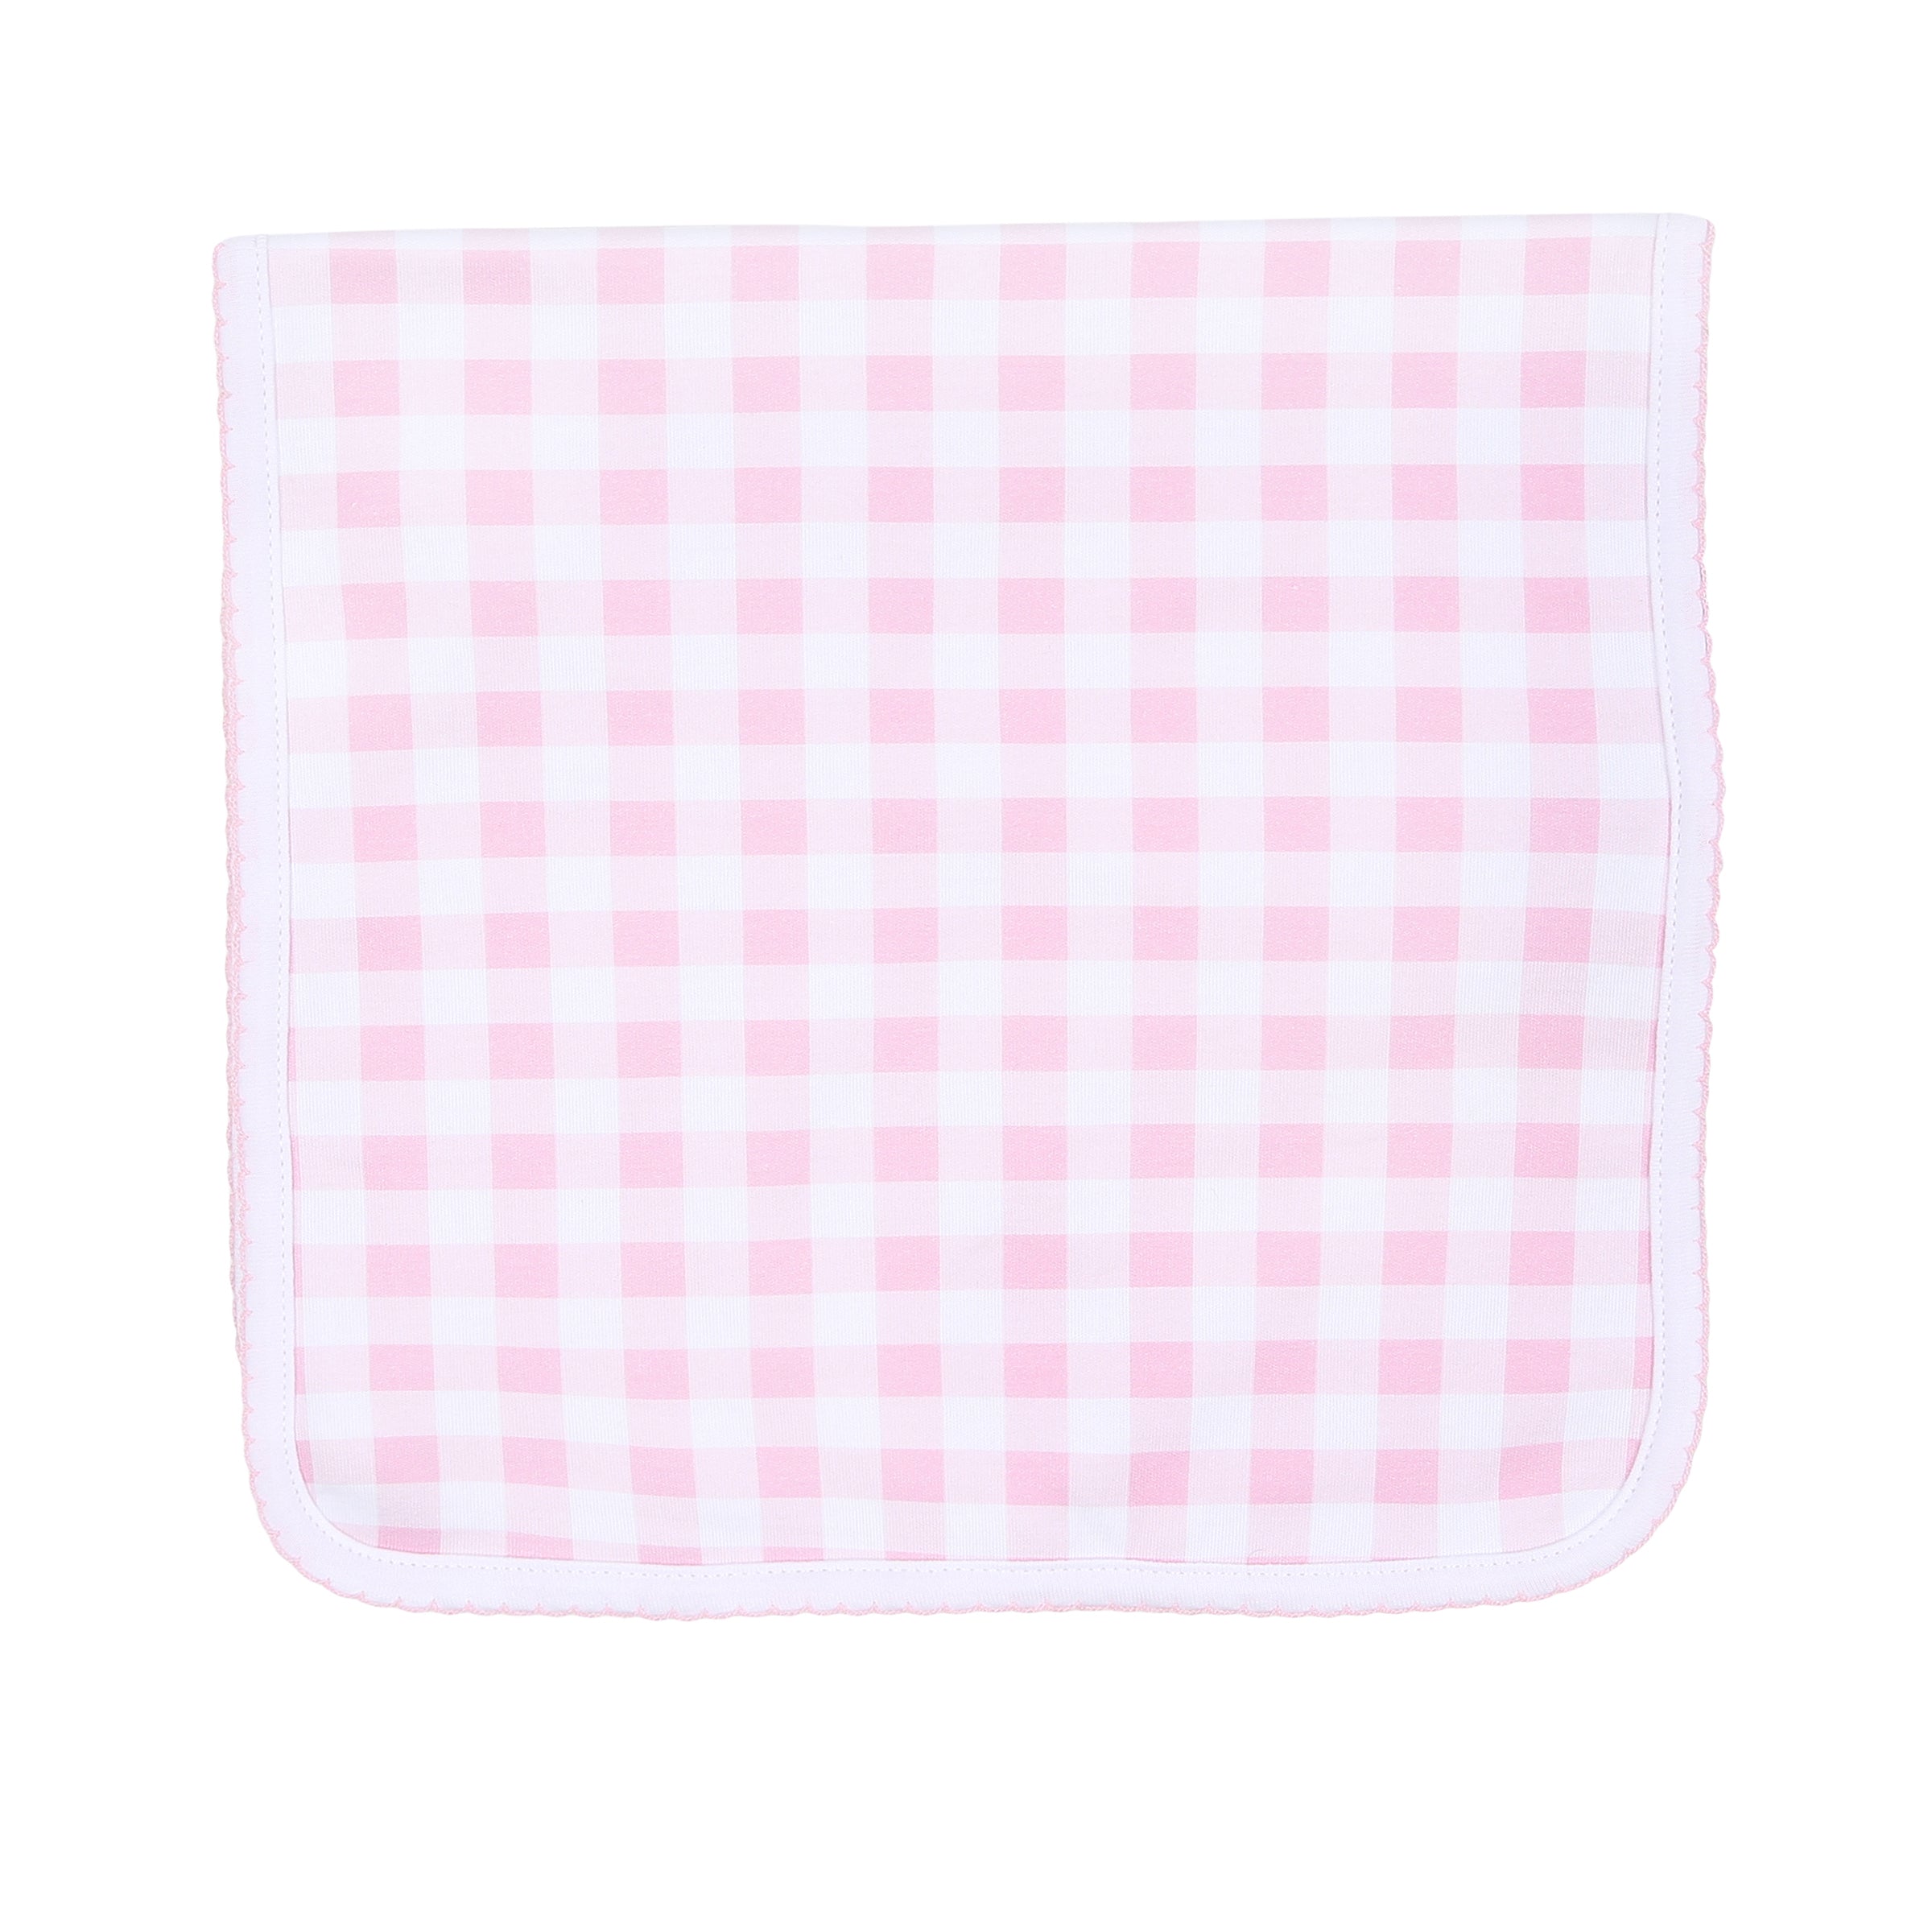 Baby Checks Burp Cloth - Pink